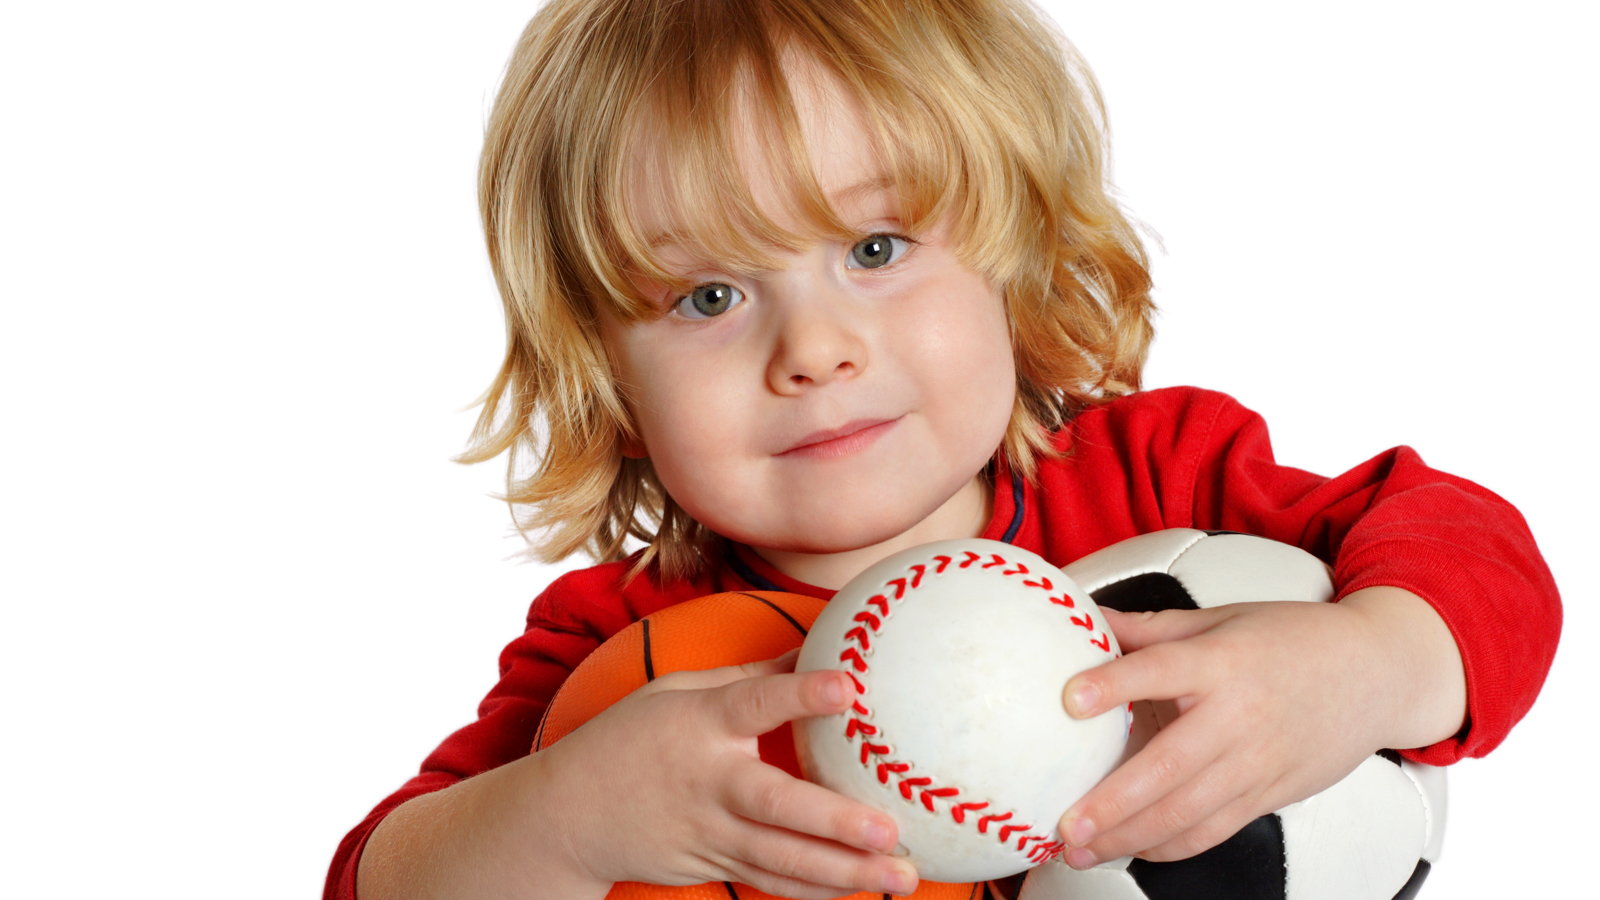 boy with softball, basketball, and soccer ball